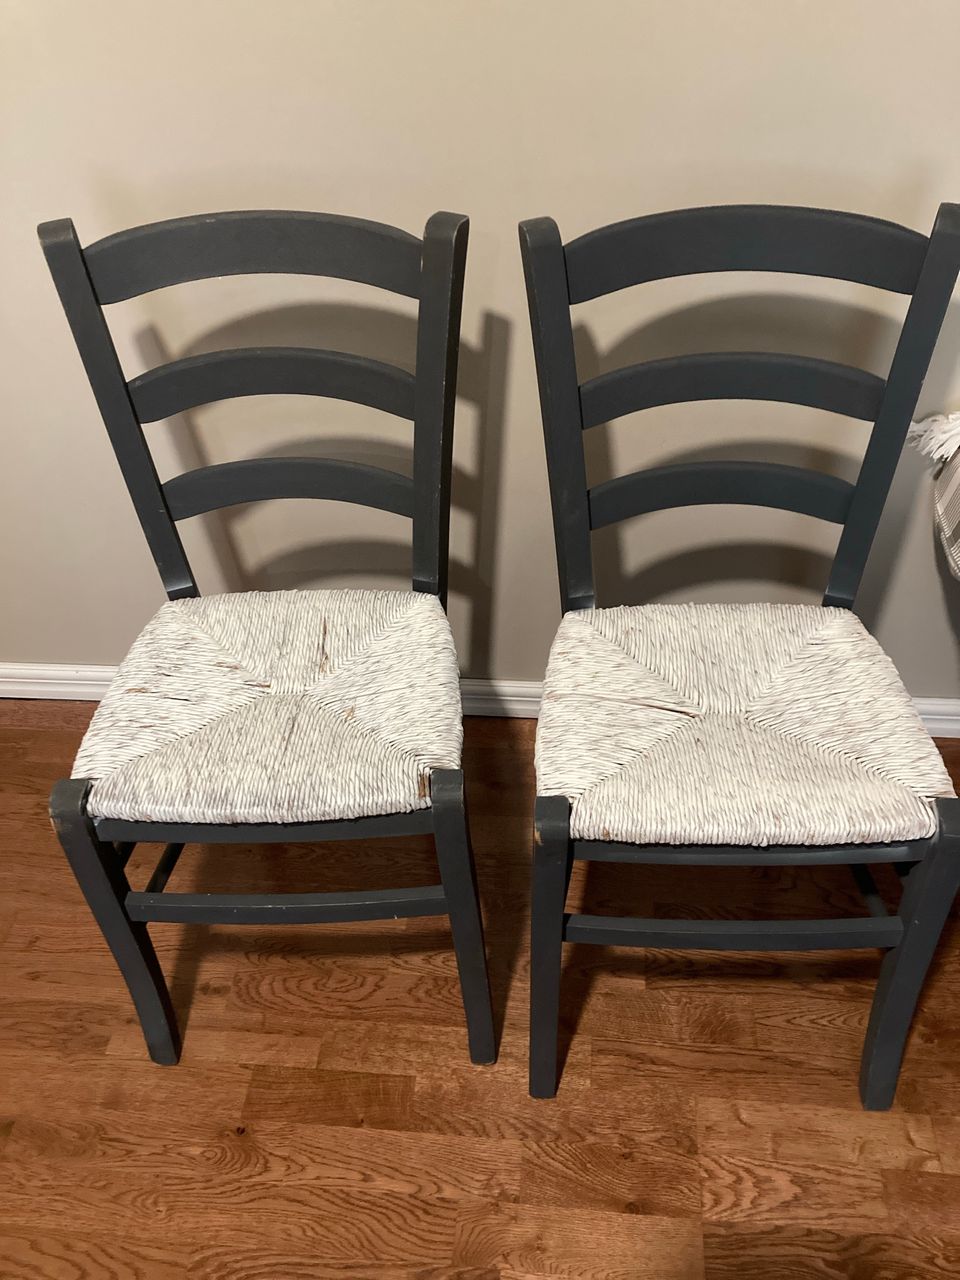 Myydään kaksi tuolia